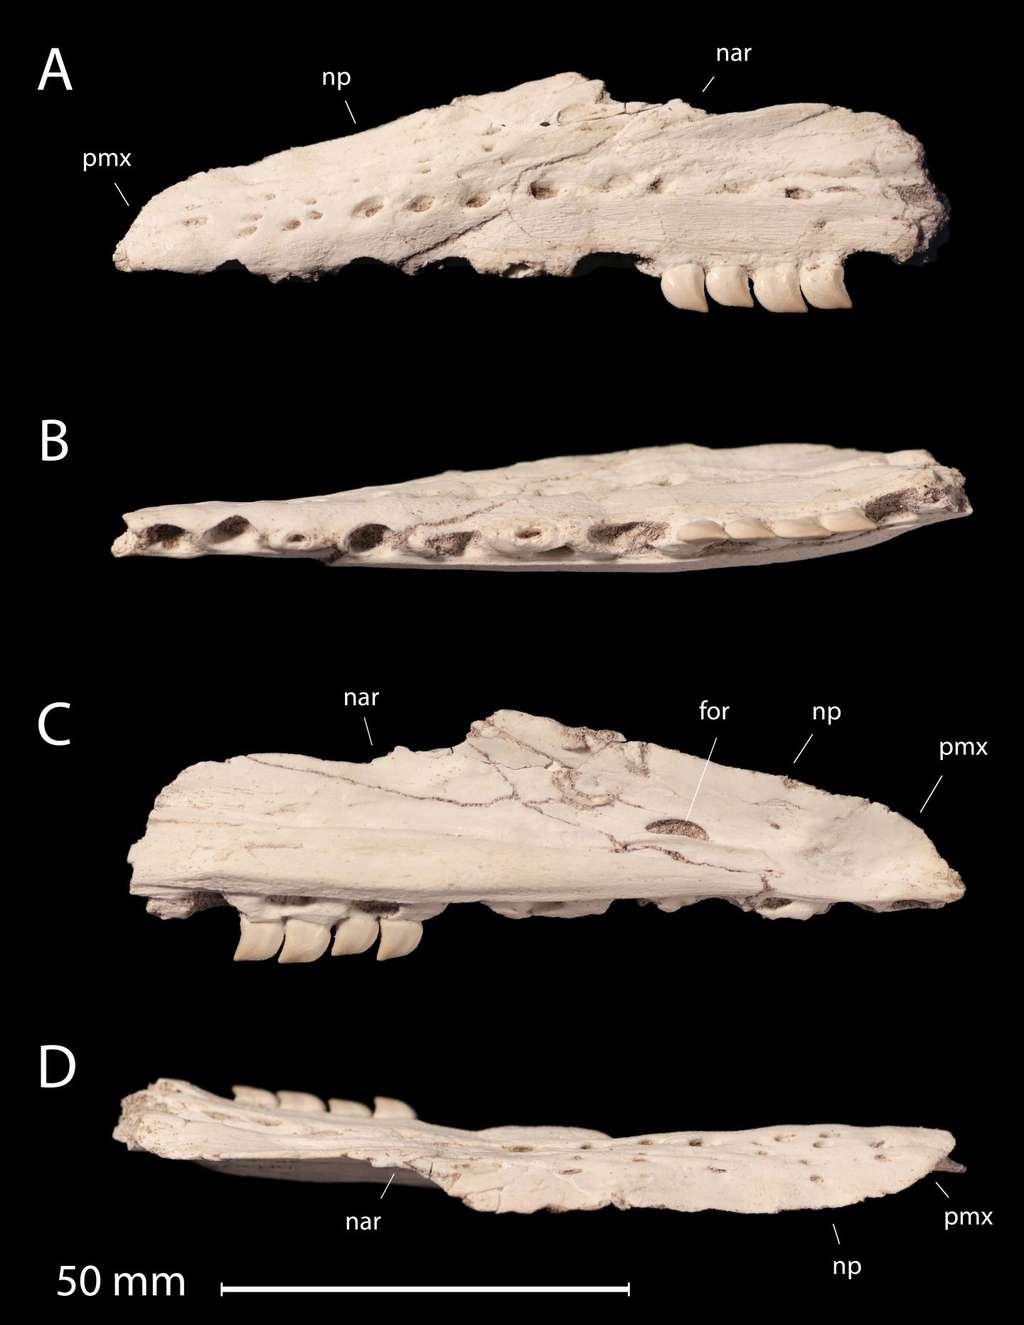 La mâchoire fossilisée de <em>Xenodeus calminechari</em> où l'on voit ses dents en forme de scie. Une forme plutôt observée chez les requins que chez les reptiles. © Nick Longrich 